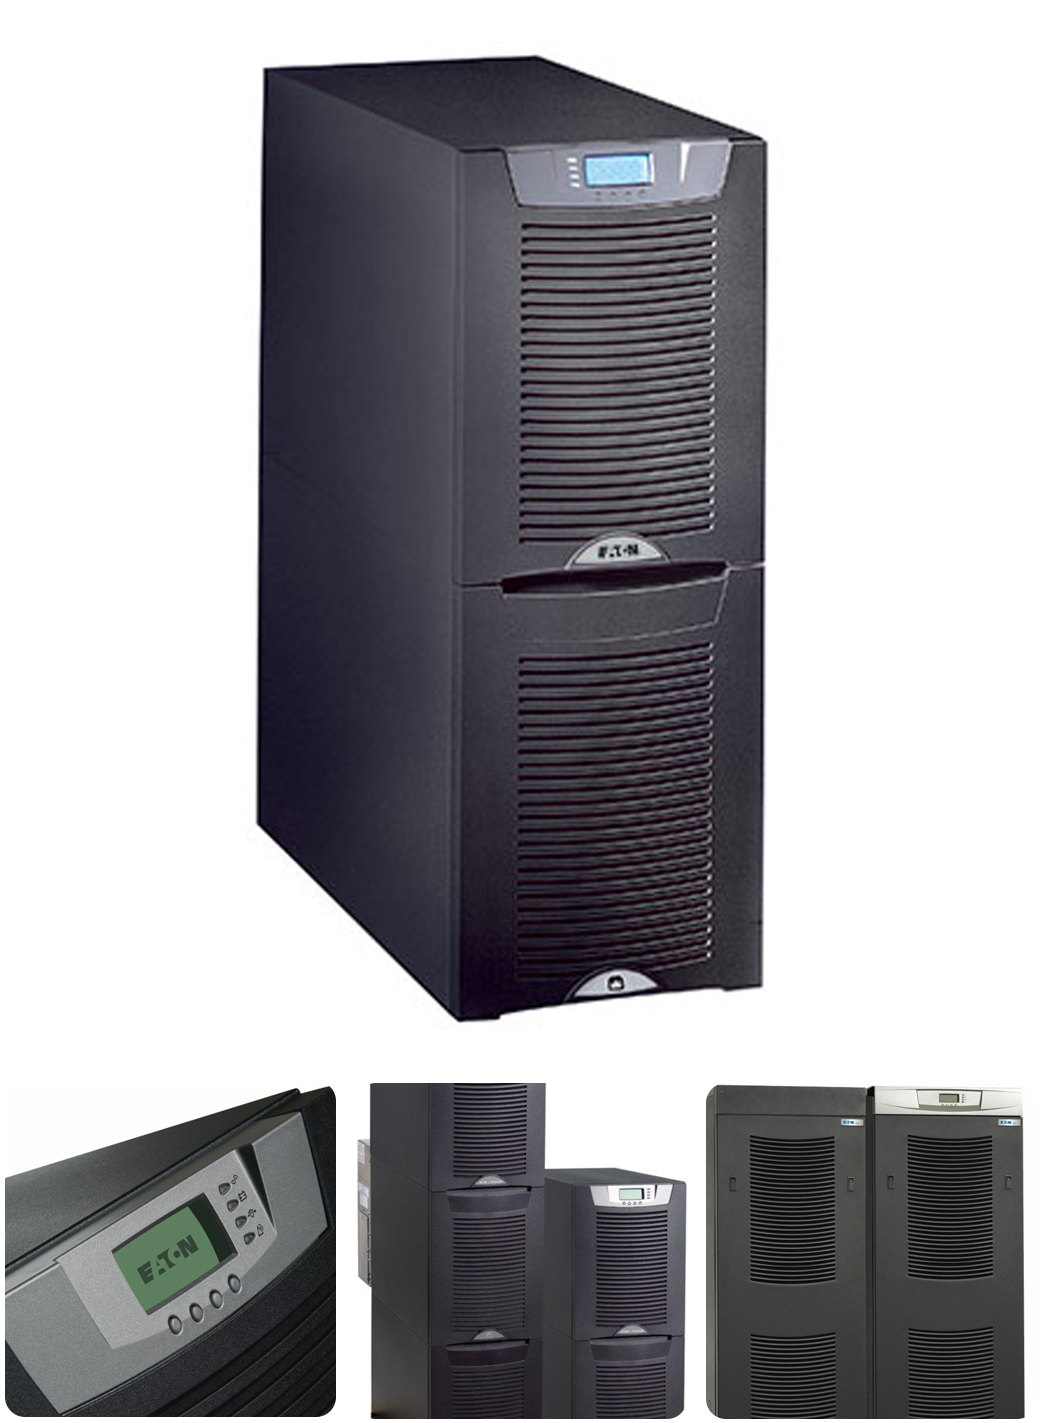 Eaton Commercial 9155 Single Phase Battery Backup UPS, Eaton Industrial 9155 Single Phase Battery Backup UPS